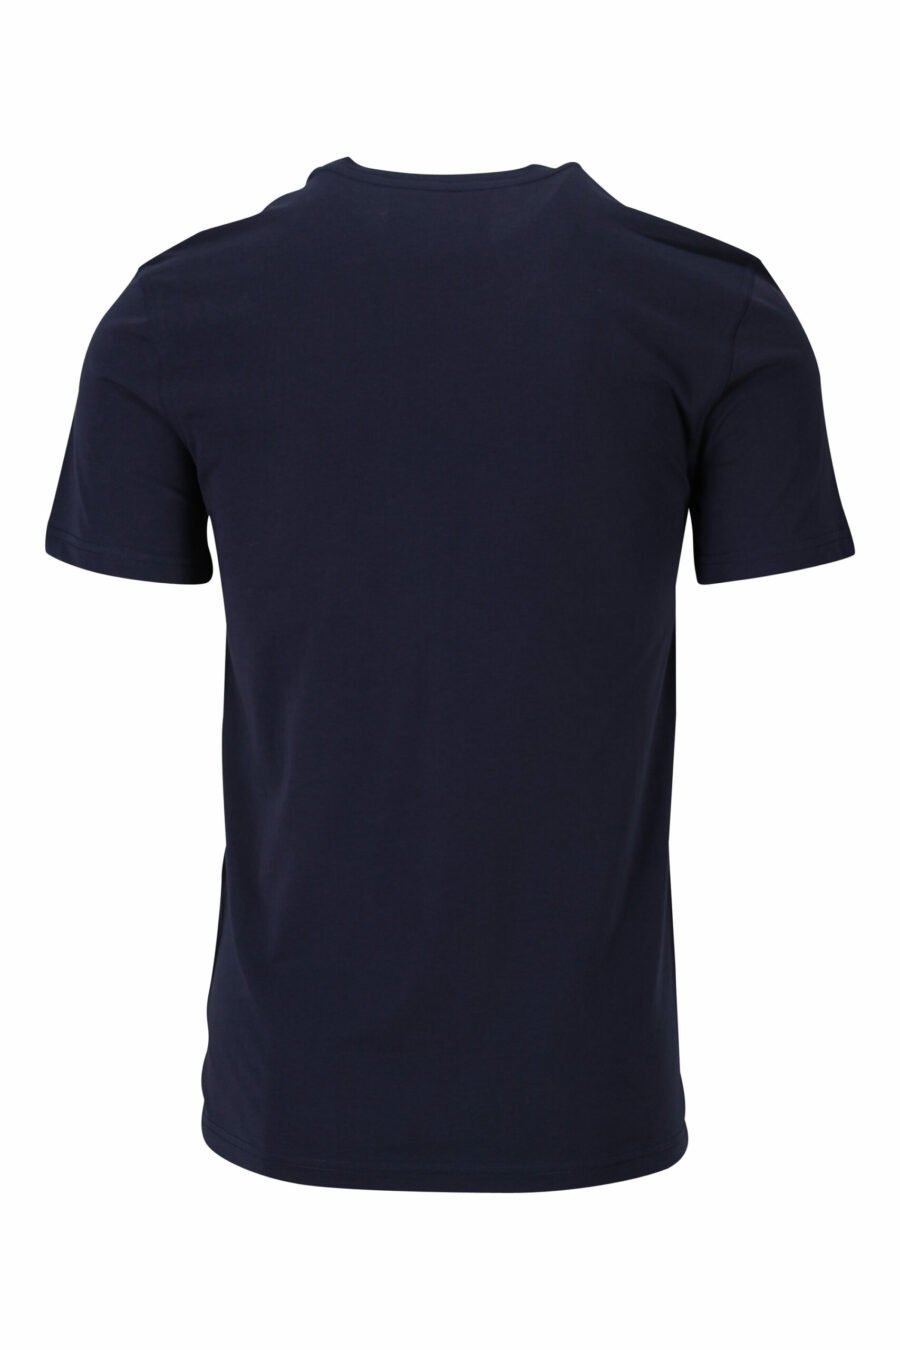 T-shirt azul escura com maxilogo "teddy" feito à medida - 667113124827 1 à escala